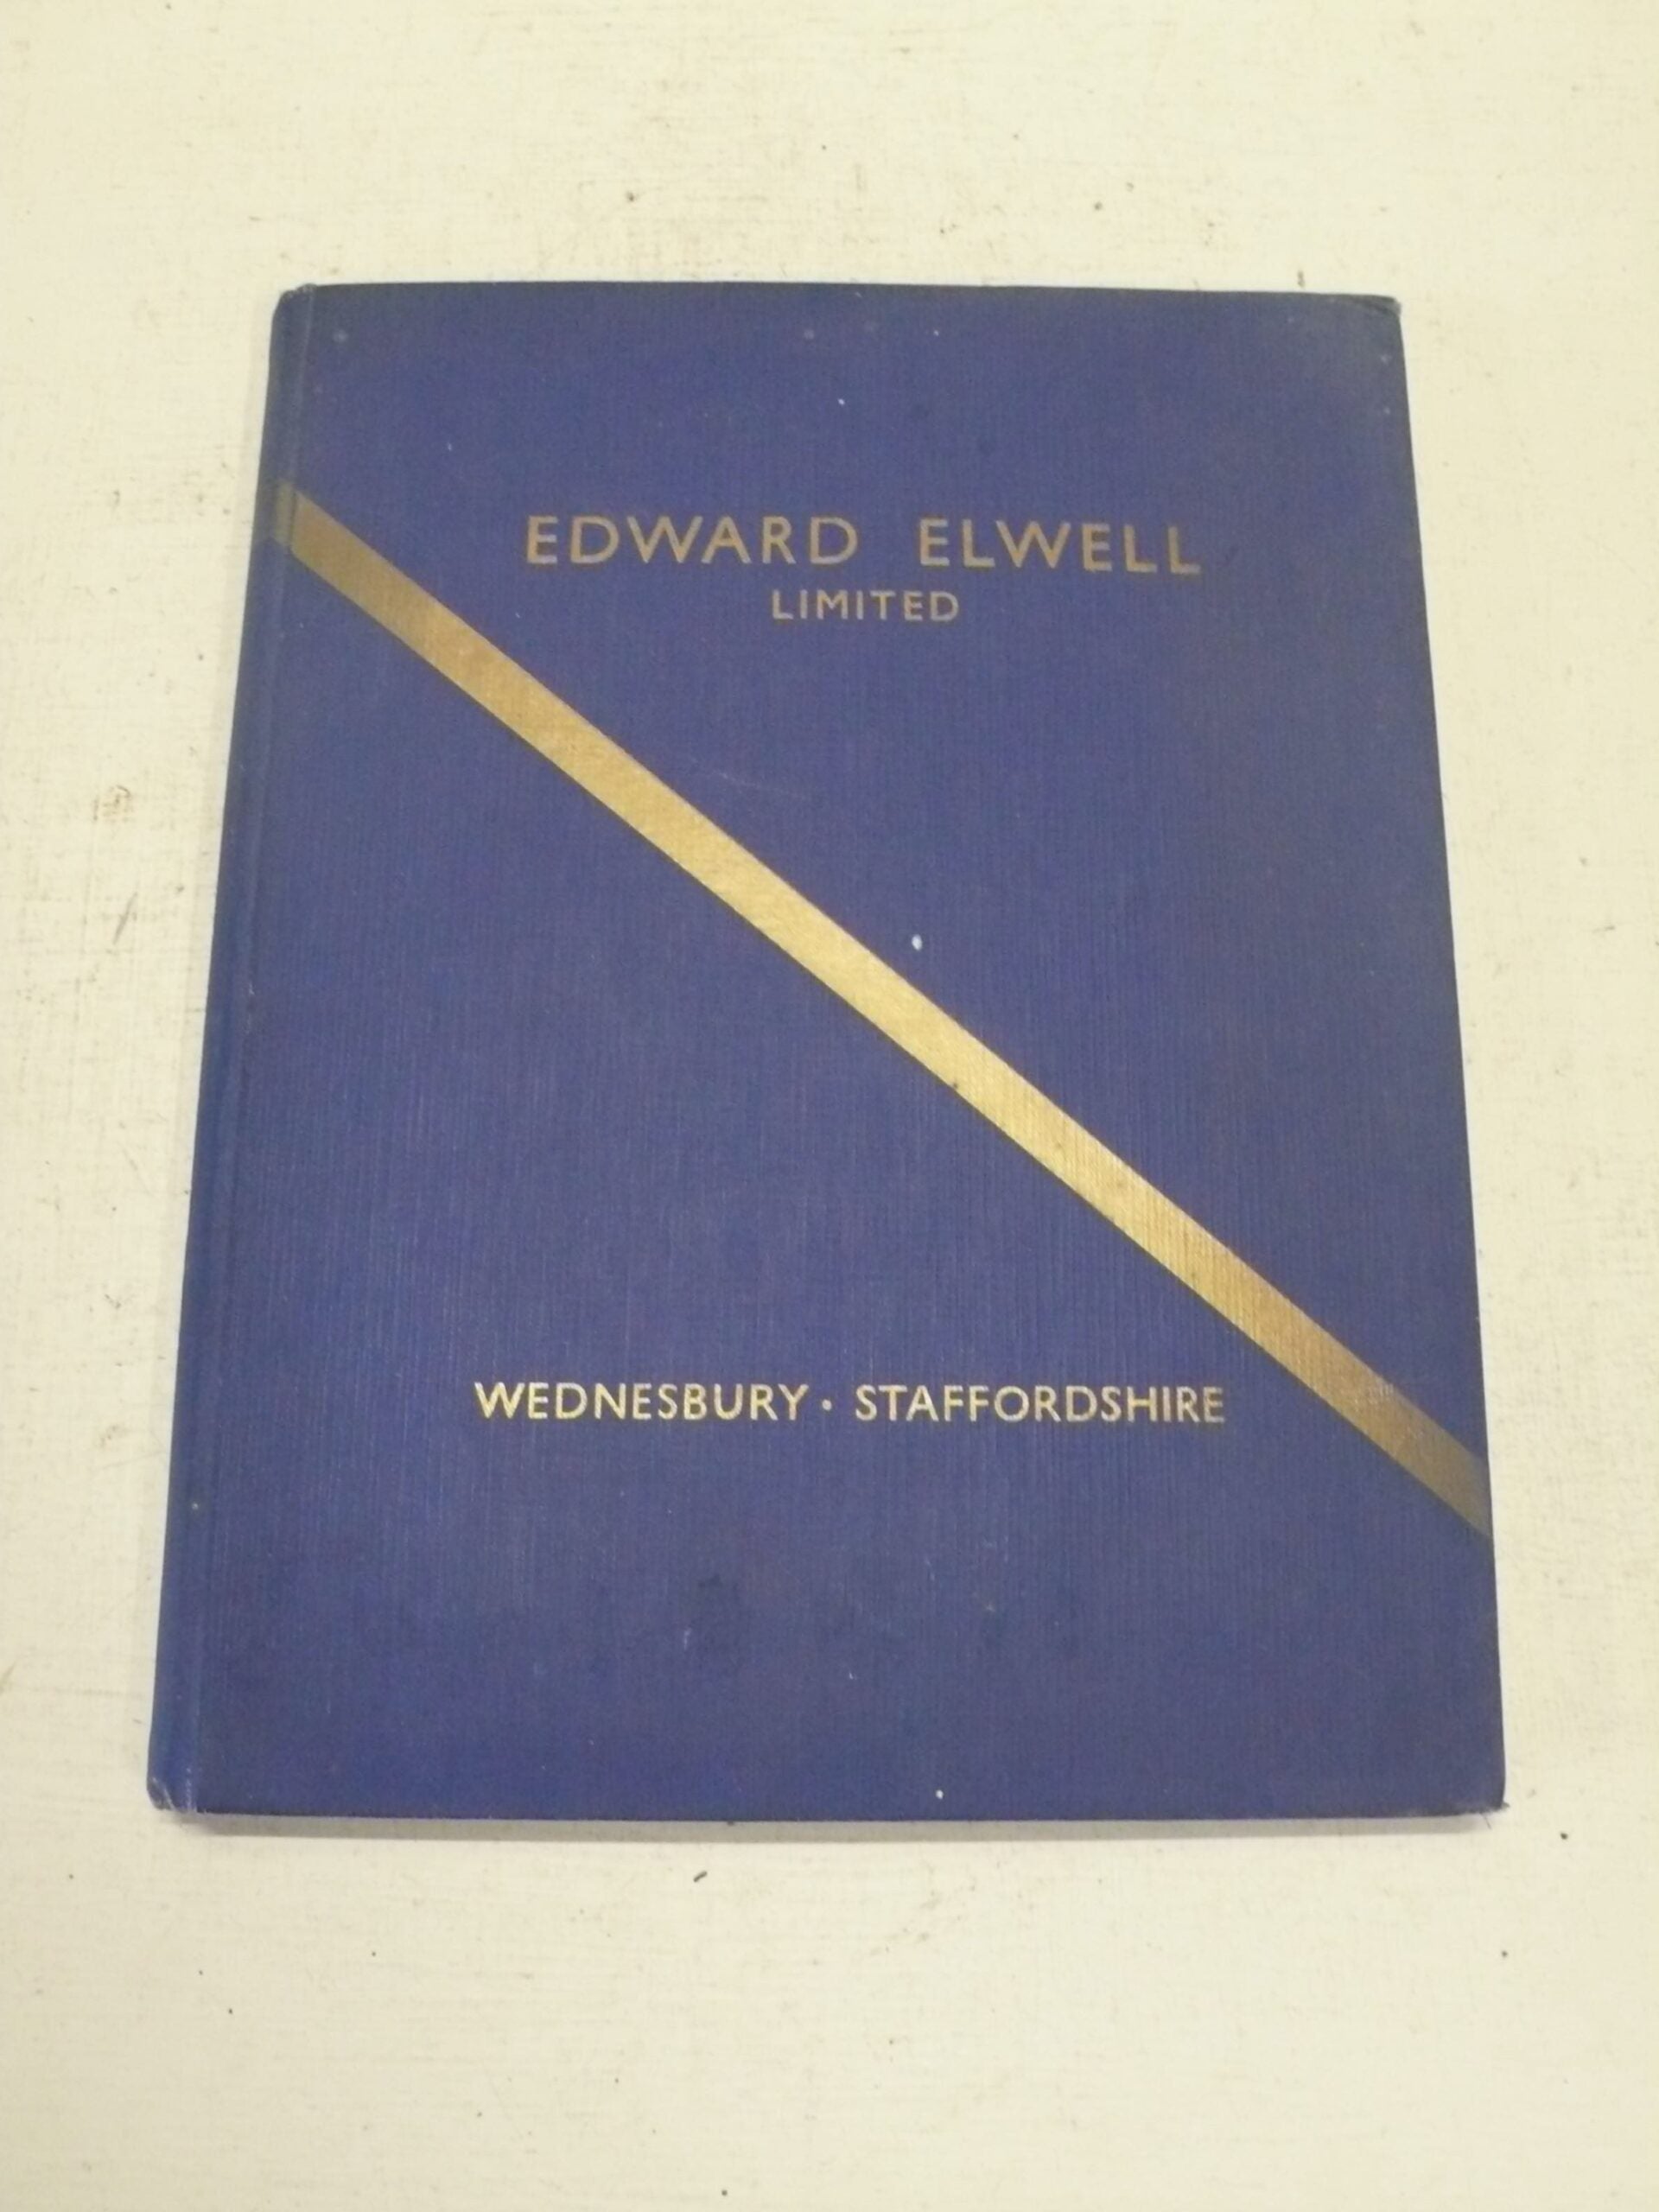 Elwell Tool Catalogue, 1960